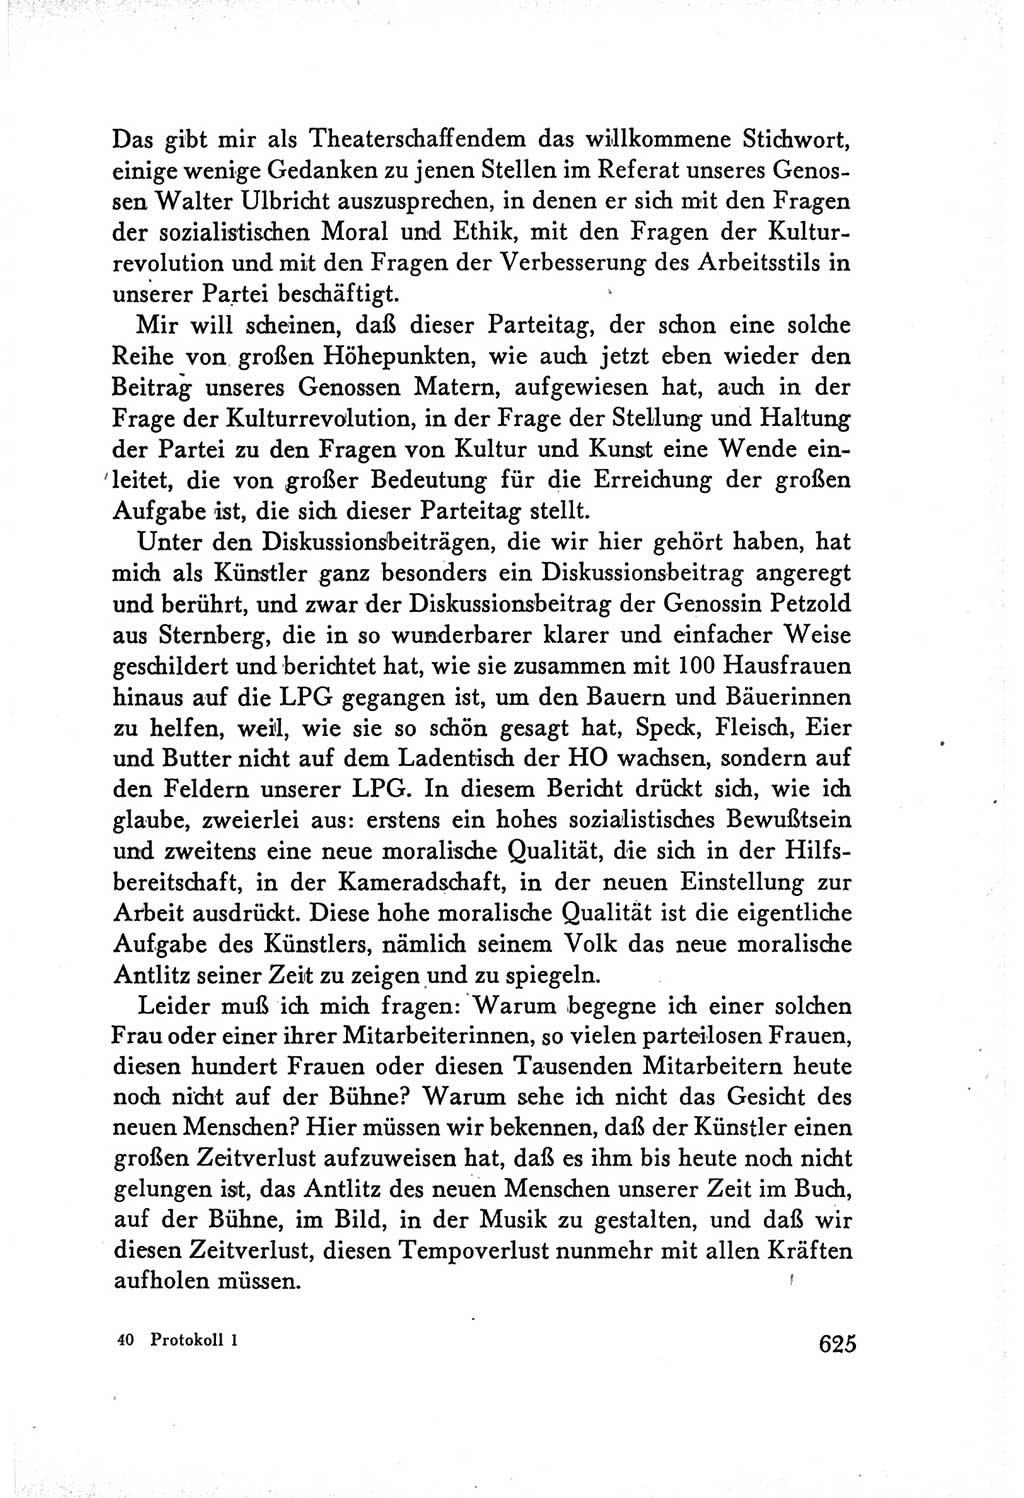 Protokoll der Verhandlungen des Ⅴ. Parteitages der Sozialistischen Einheitspartei Deutschlands (SED) [Deutsche Demokratische Republik (DDR)] 1958, Seite 625